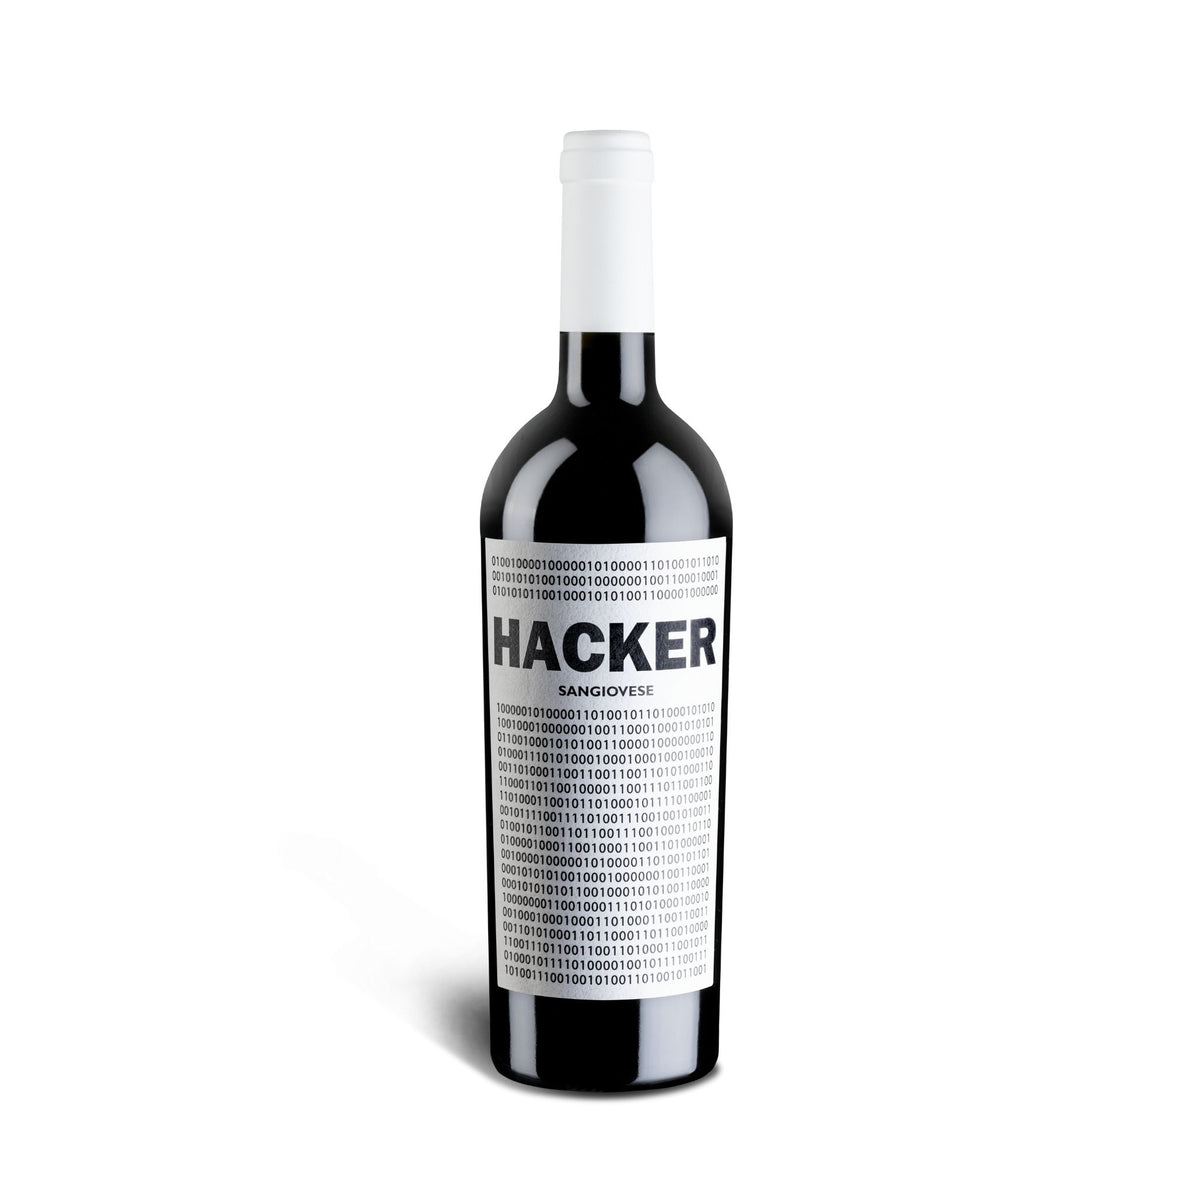 Ferro13 Hacker Sangiovese Toskana IGT Rotwein online kaufen bei vinmio vivino geile weine vinmio vino lecker vino24 weinshop